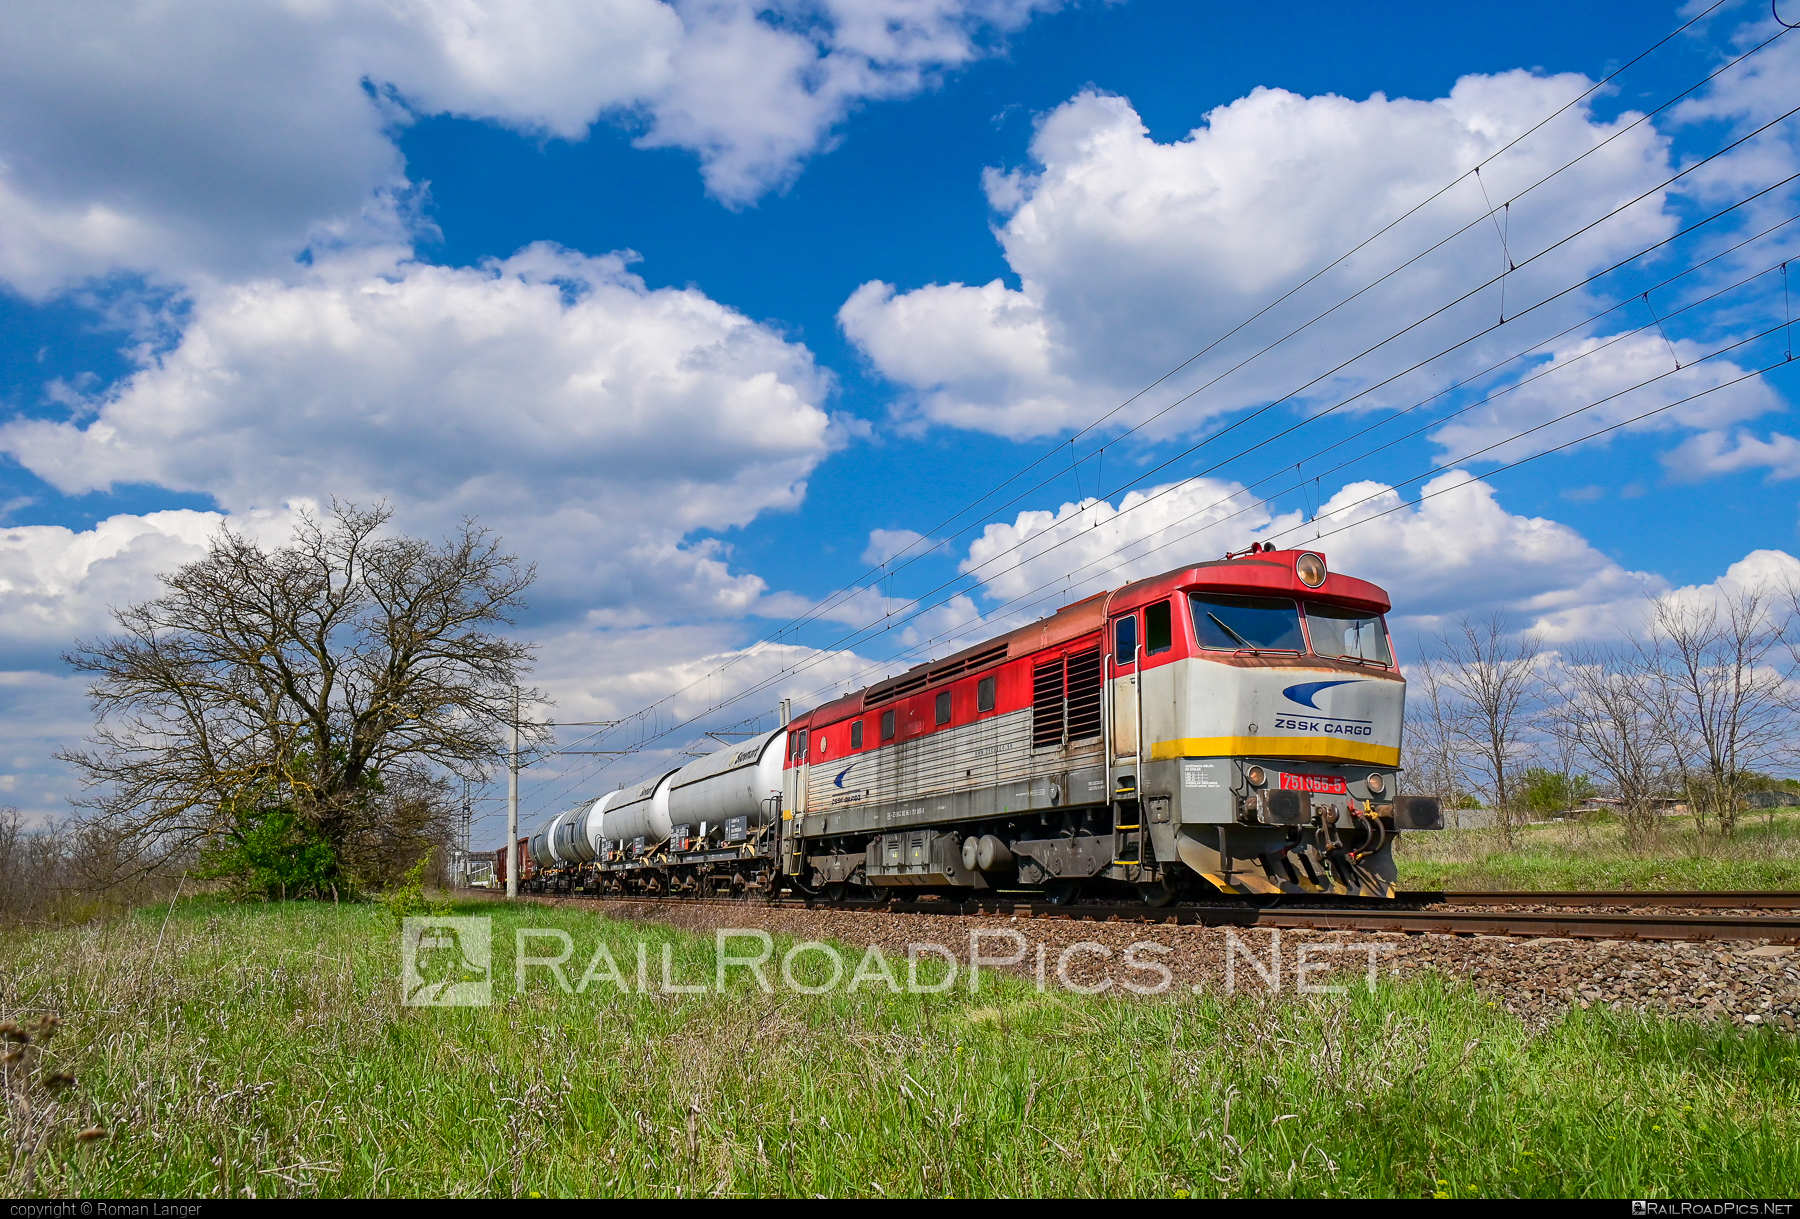 ČKD T 478.1 (751) - 751 055-5 operated by Železničná Spoločnost' Cargo Slovakia a.s. #ZeleznicnaSpolocnostCargoSlovakia #bardotka #ckd #ckd4781 #ckd751 #ckdt4781 #mixofcargo #zamracena #zsskcargo